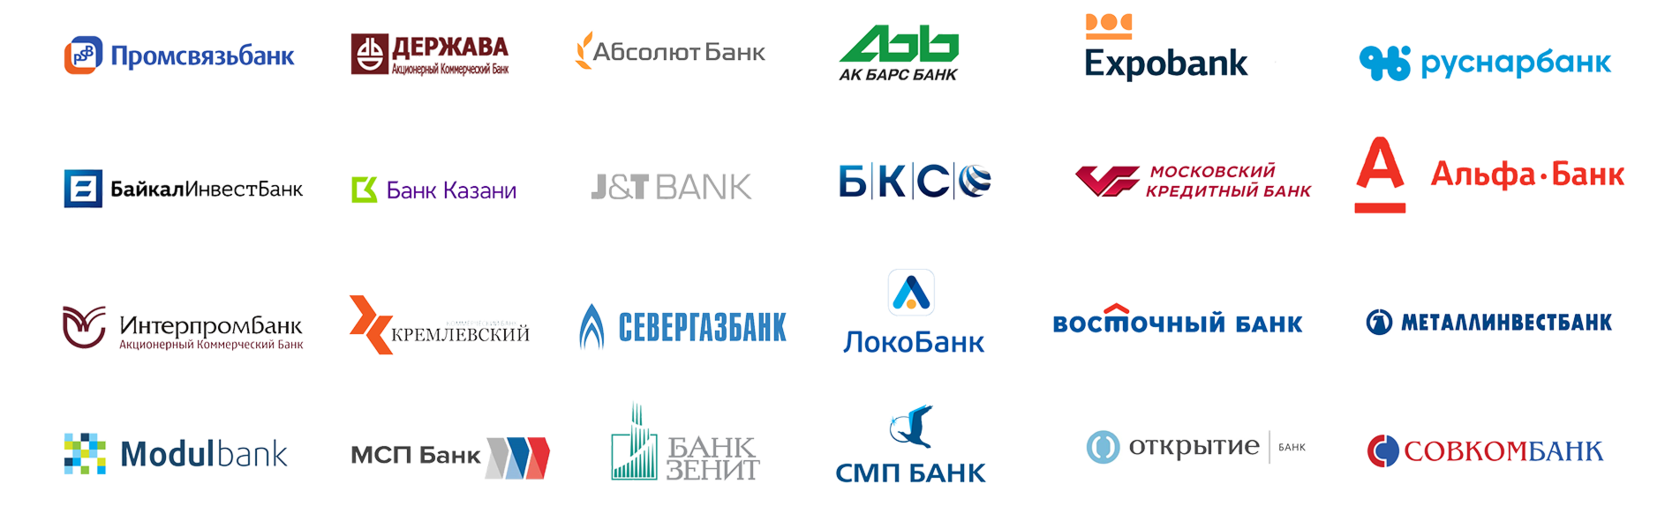 Банки партнеры. Банки партнеры список. Модуль банк партнер. Банки партнеры РЖД.